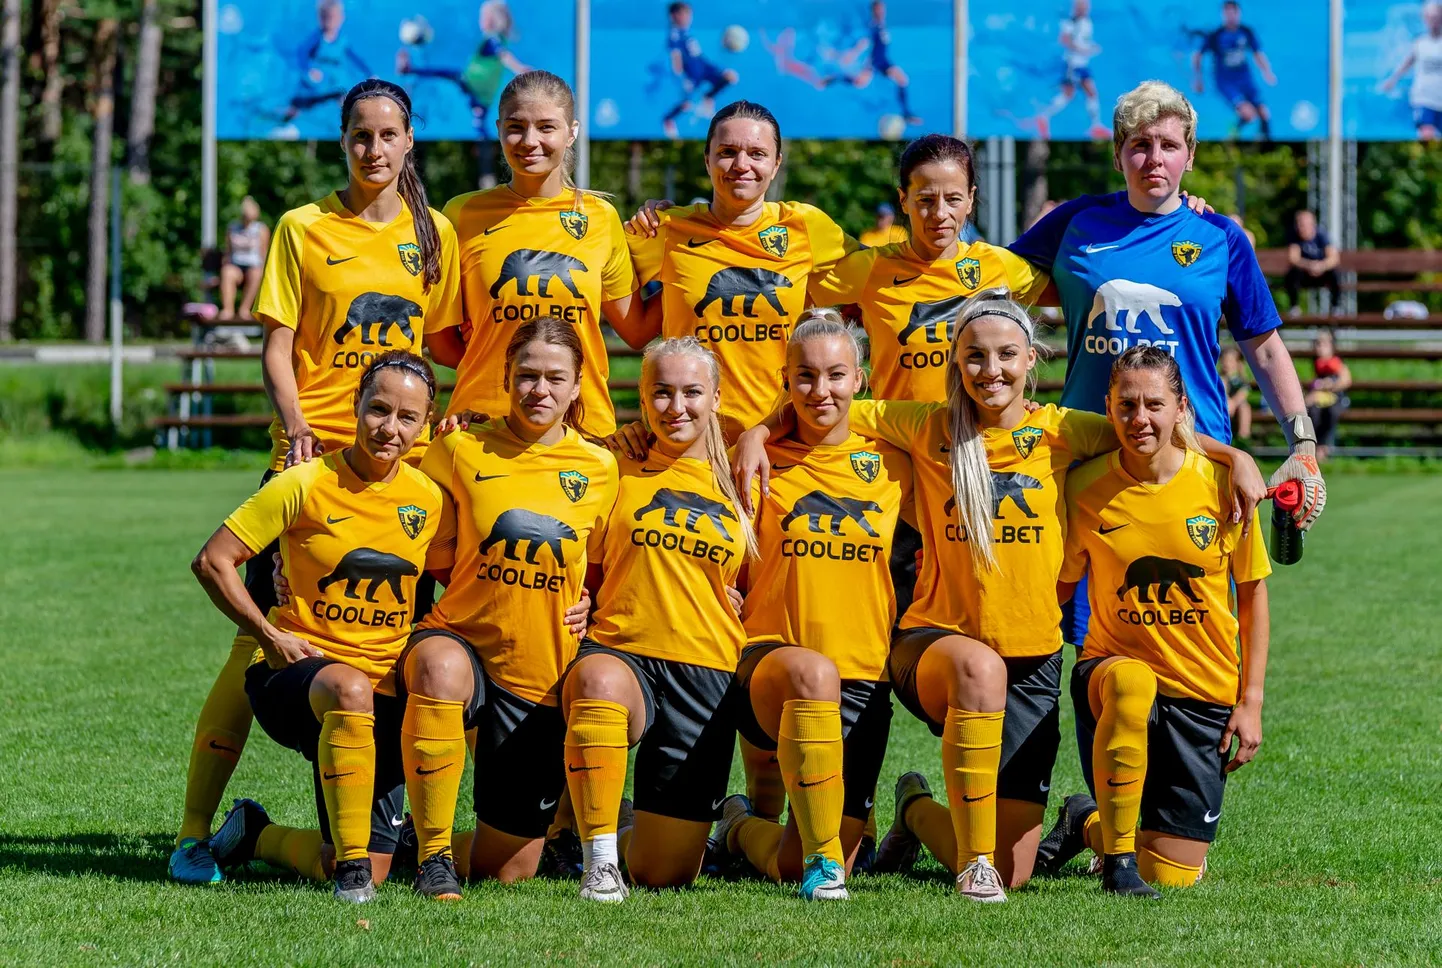 Lõppenud hooajal naiste teises liigas teise koha saavutanud Pärnu Vapruse jalgpallinaiskonnale avanes võimalus uuel hooajal kaasa lüüa kõige kõrgemal liigatasemel.